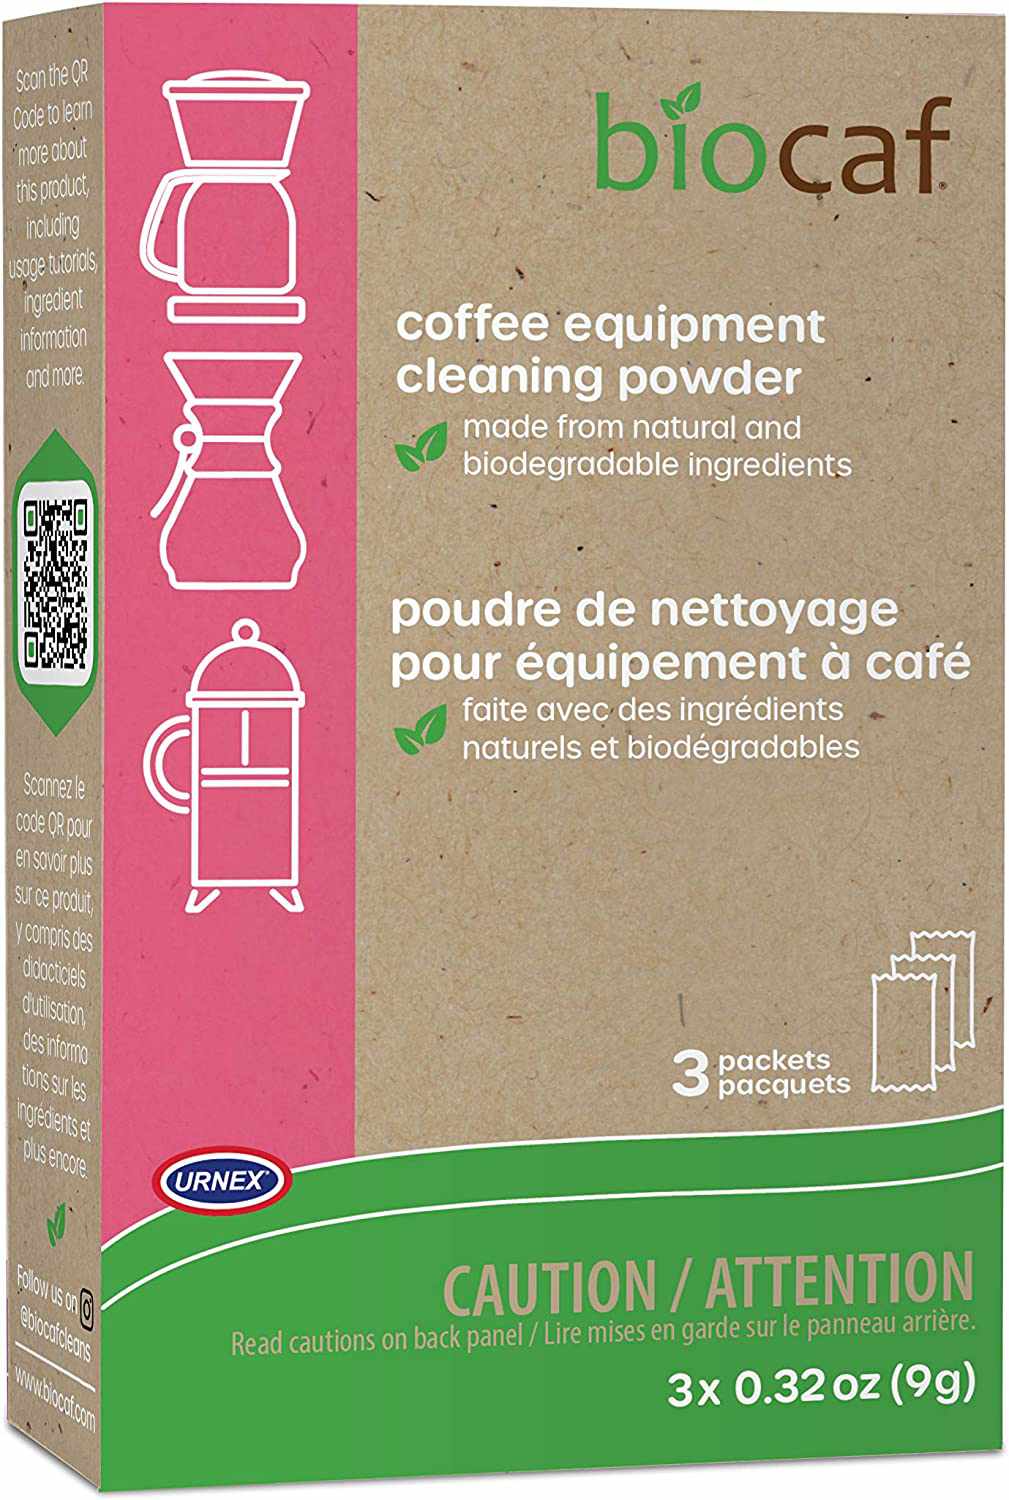 一盒咖啡机清洁粉